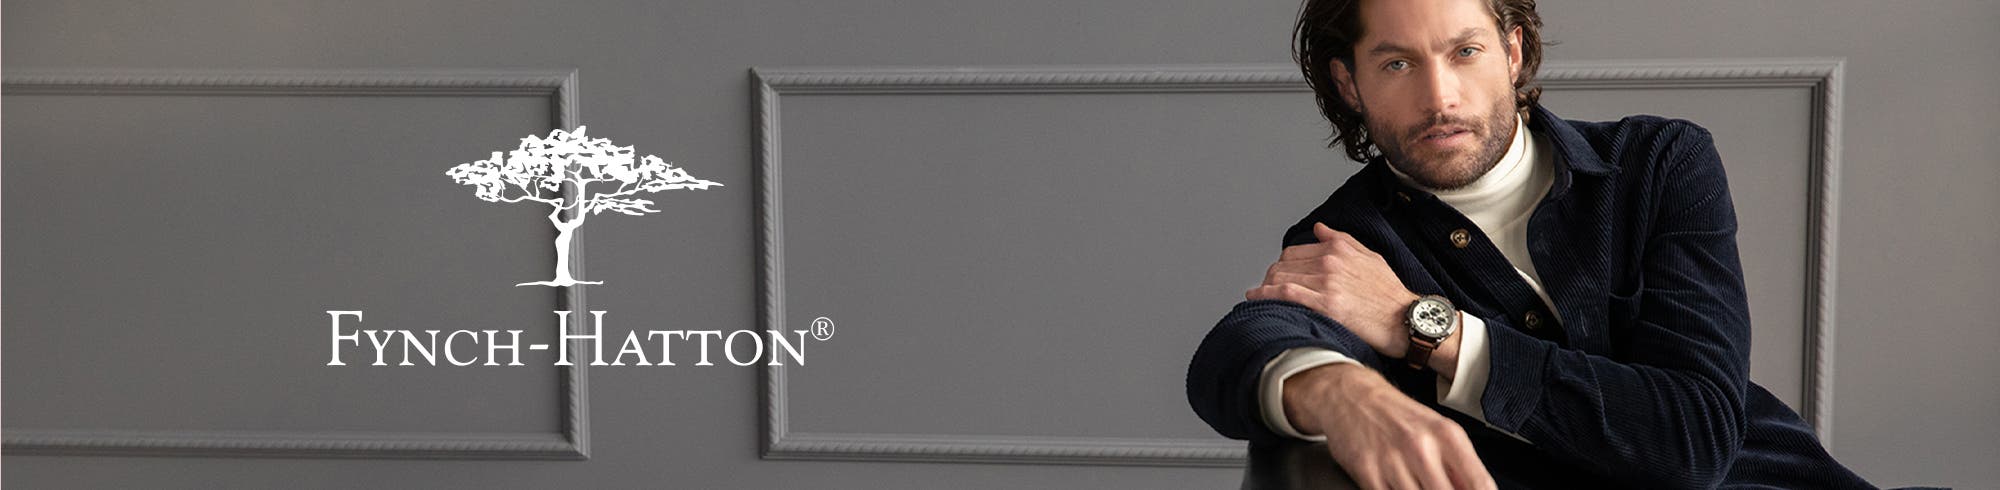 Fynch Hatton Herren Mode 30-70%* günstiger » SALE im OUTLET Online Shop